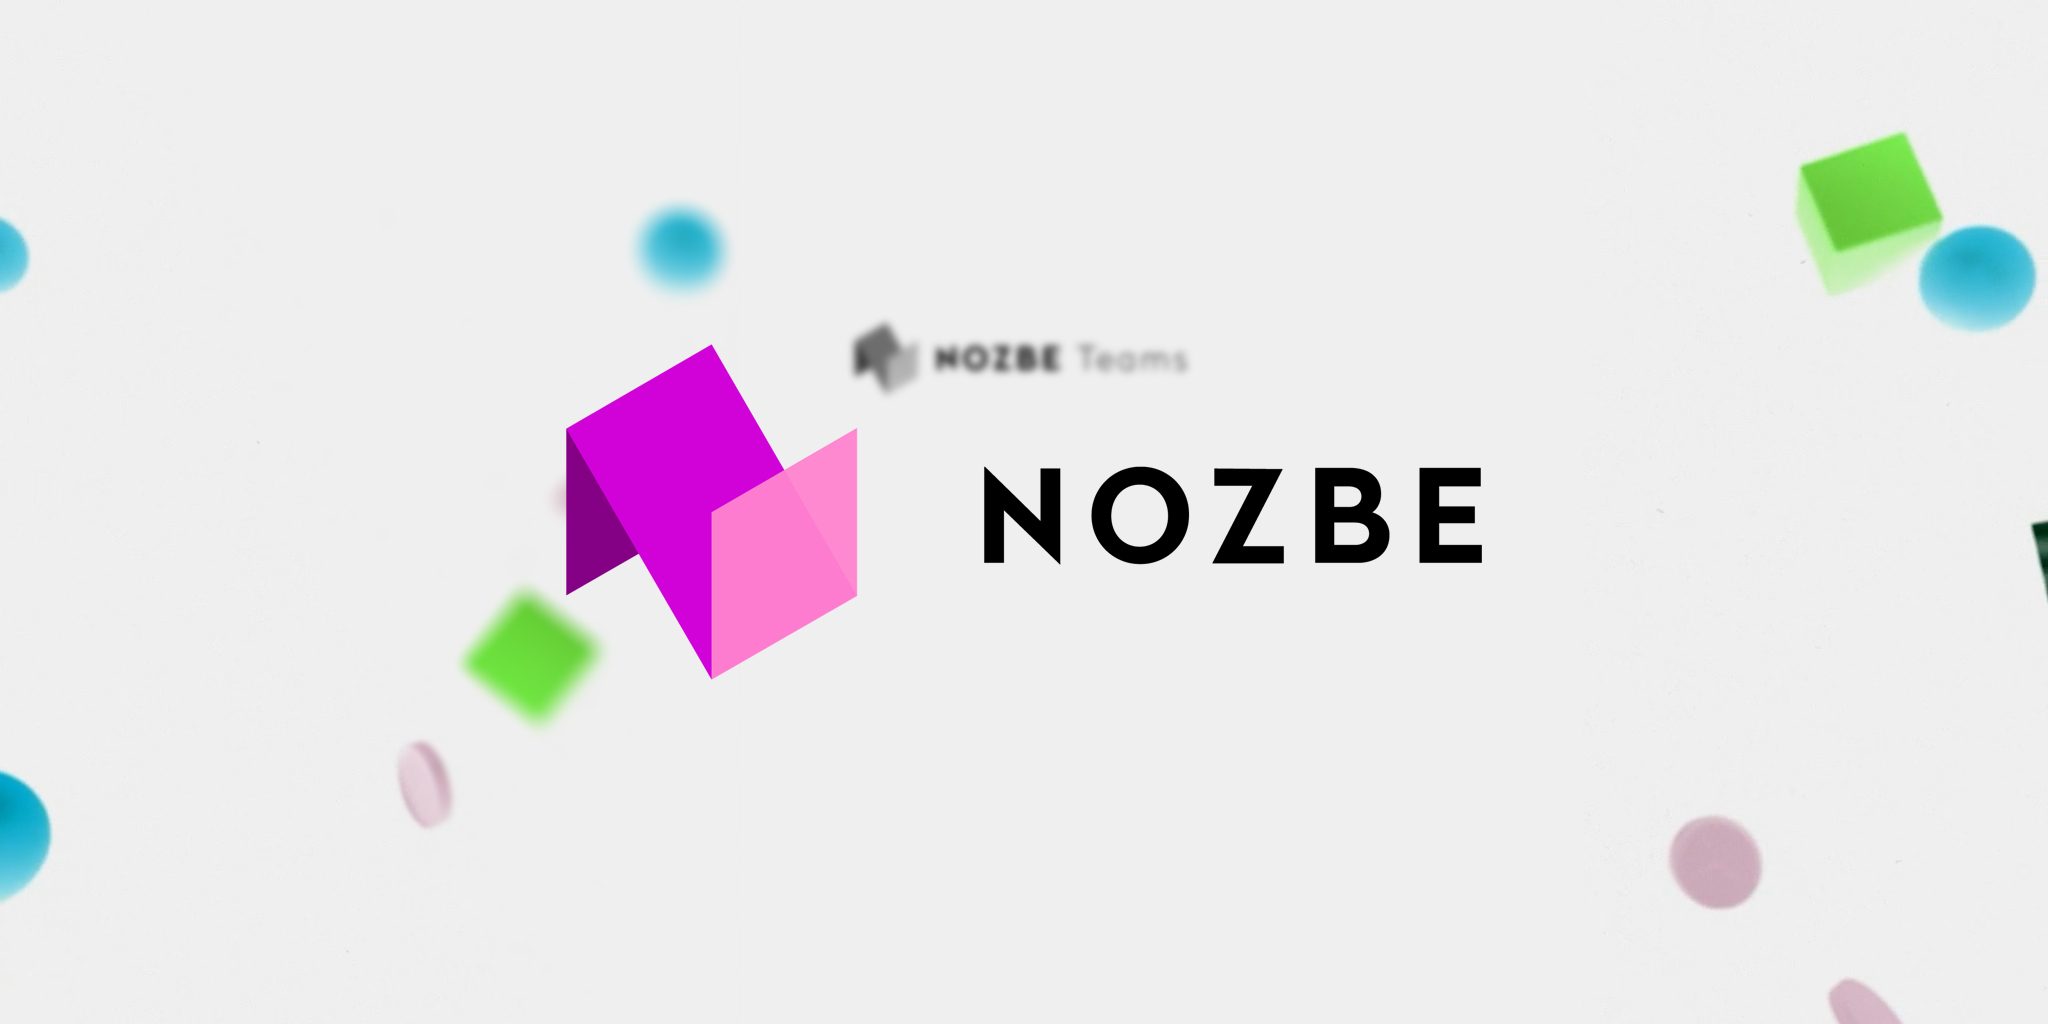 Nozbe Teams est une nouvelle version de Nozbe